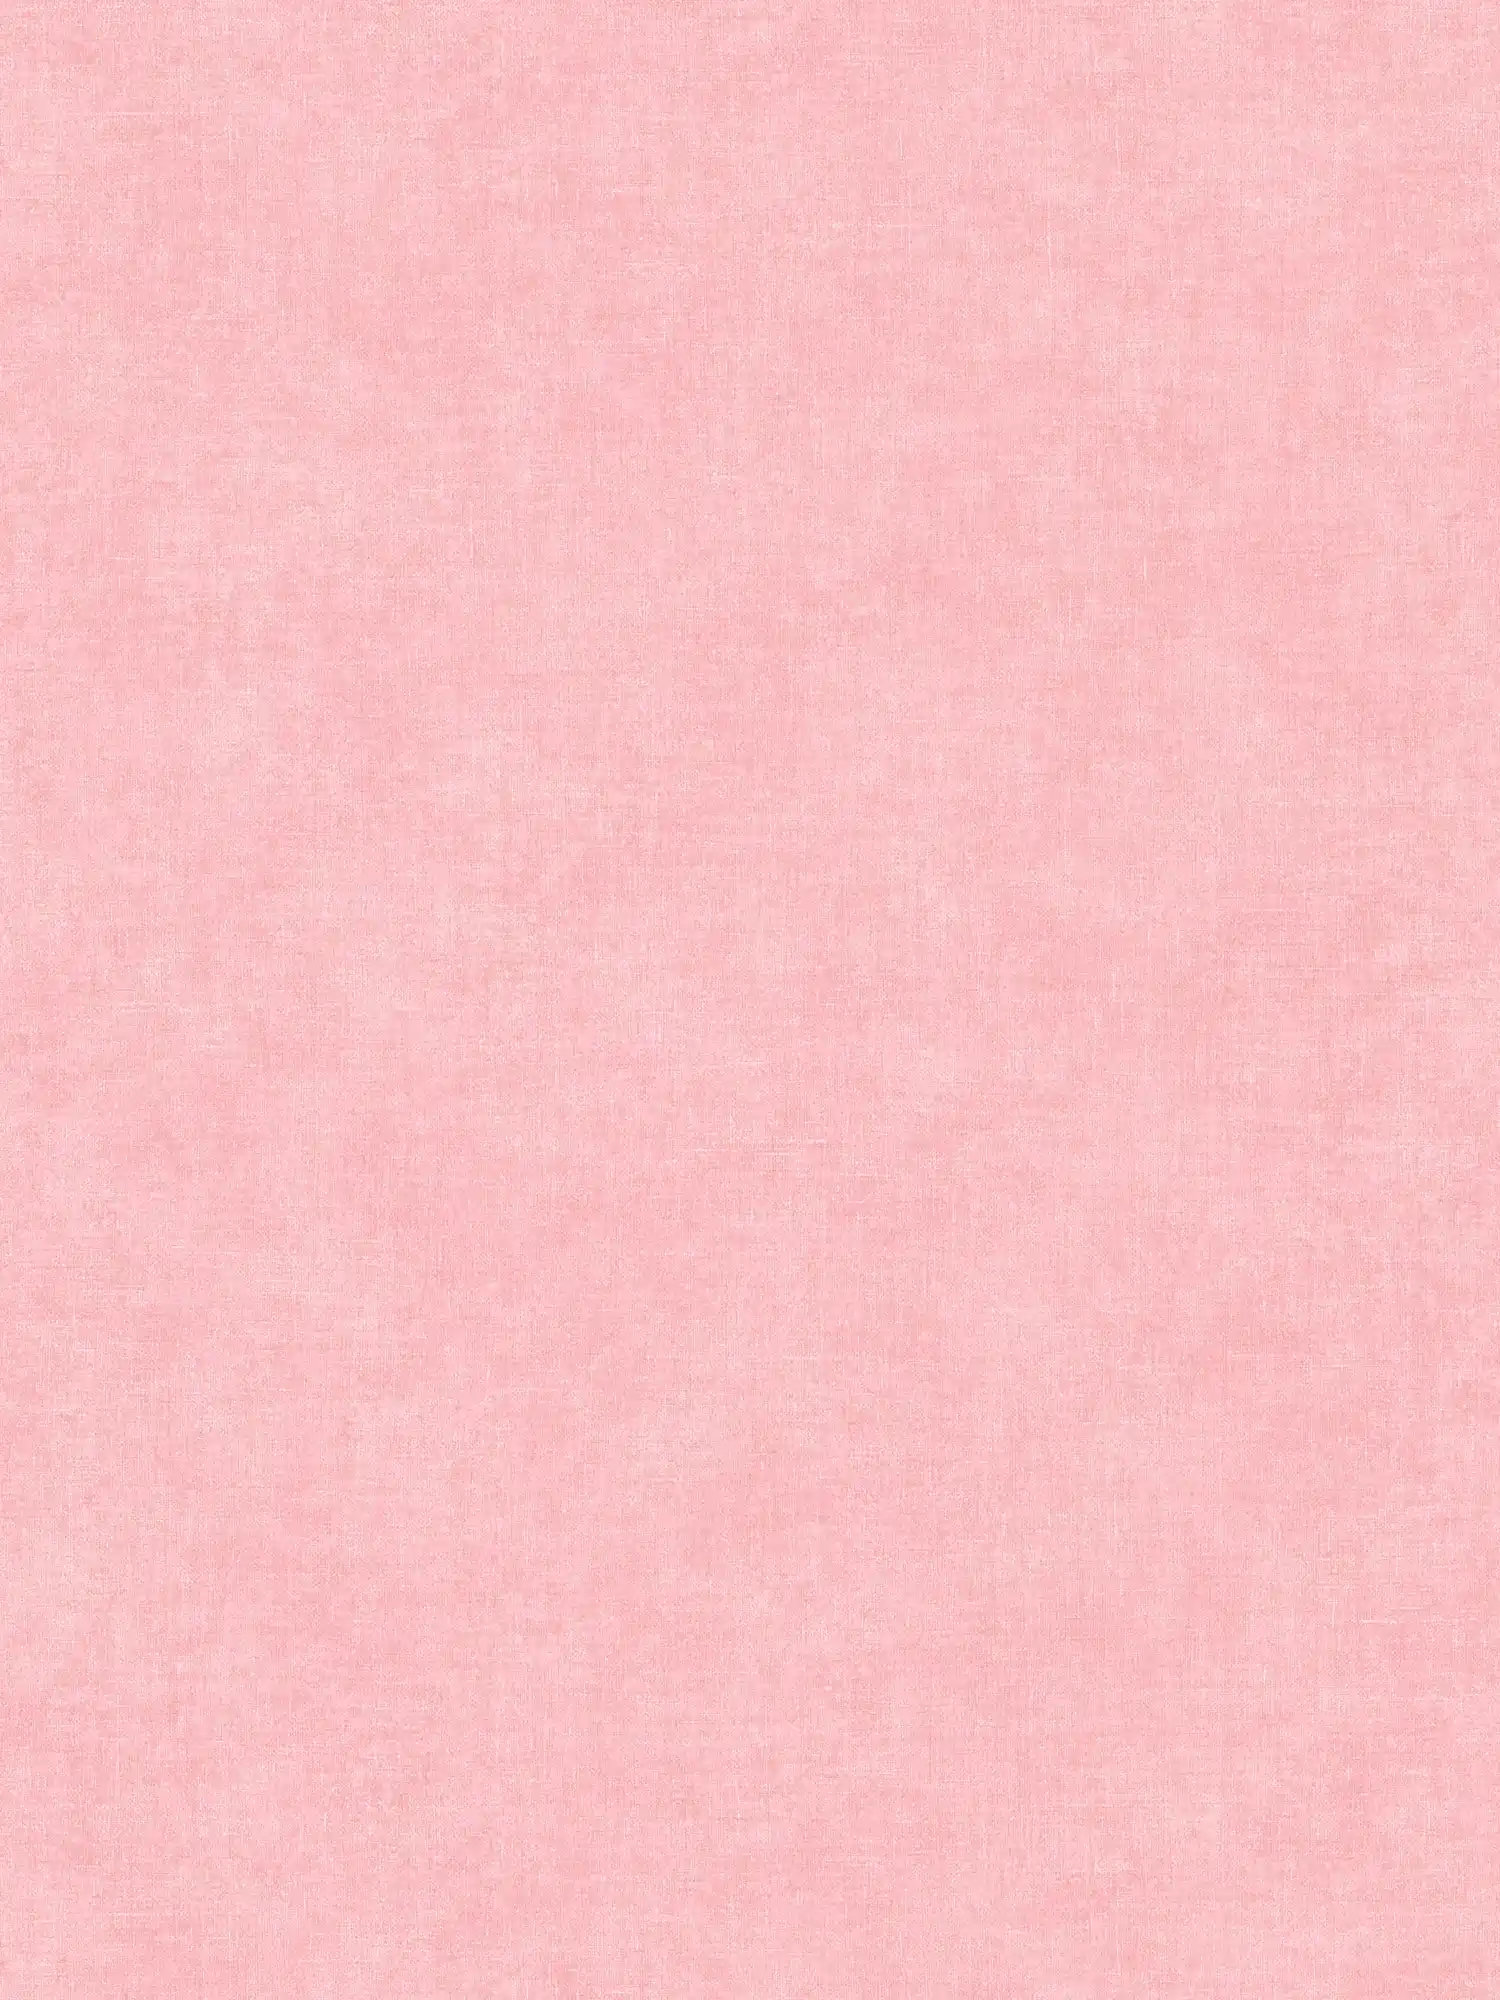 Carta da parati rosa liscia e opaca con motivo strutturato
